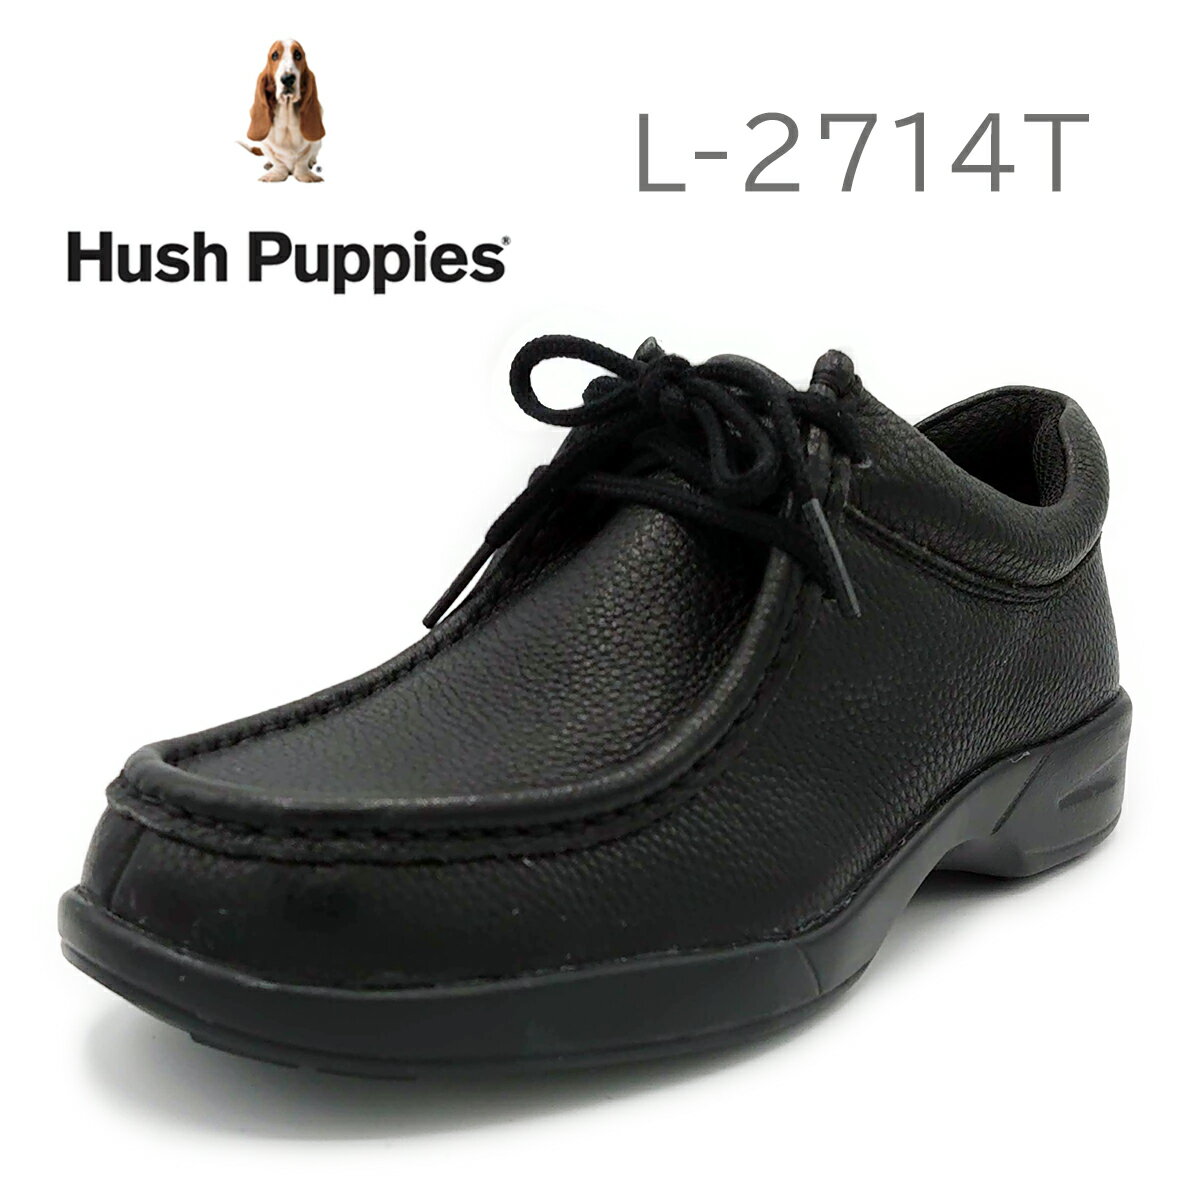 Hush Puppies ハッシュパピー レディース カジュアルシューズ L-2714T 靴 モカシン シューズレディース シューズ モカシンレディース 滑りにくい くつレディース 牛革 シュリンクレザー 滑りにくい靴 カジュアル 黒い靴 黒 ブラック 女性 おしゃれ カジュアル ブランド 高級